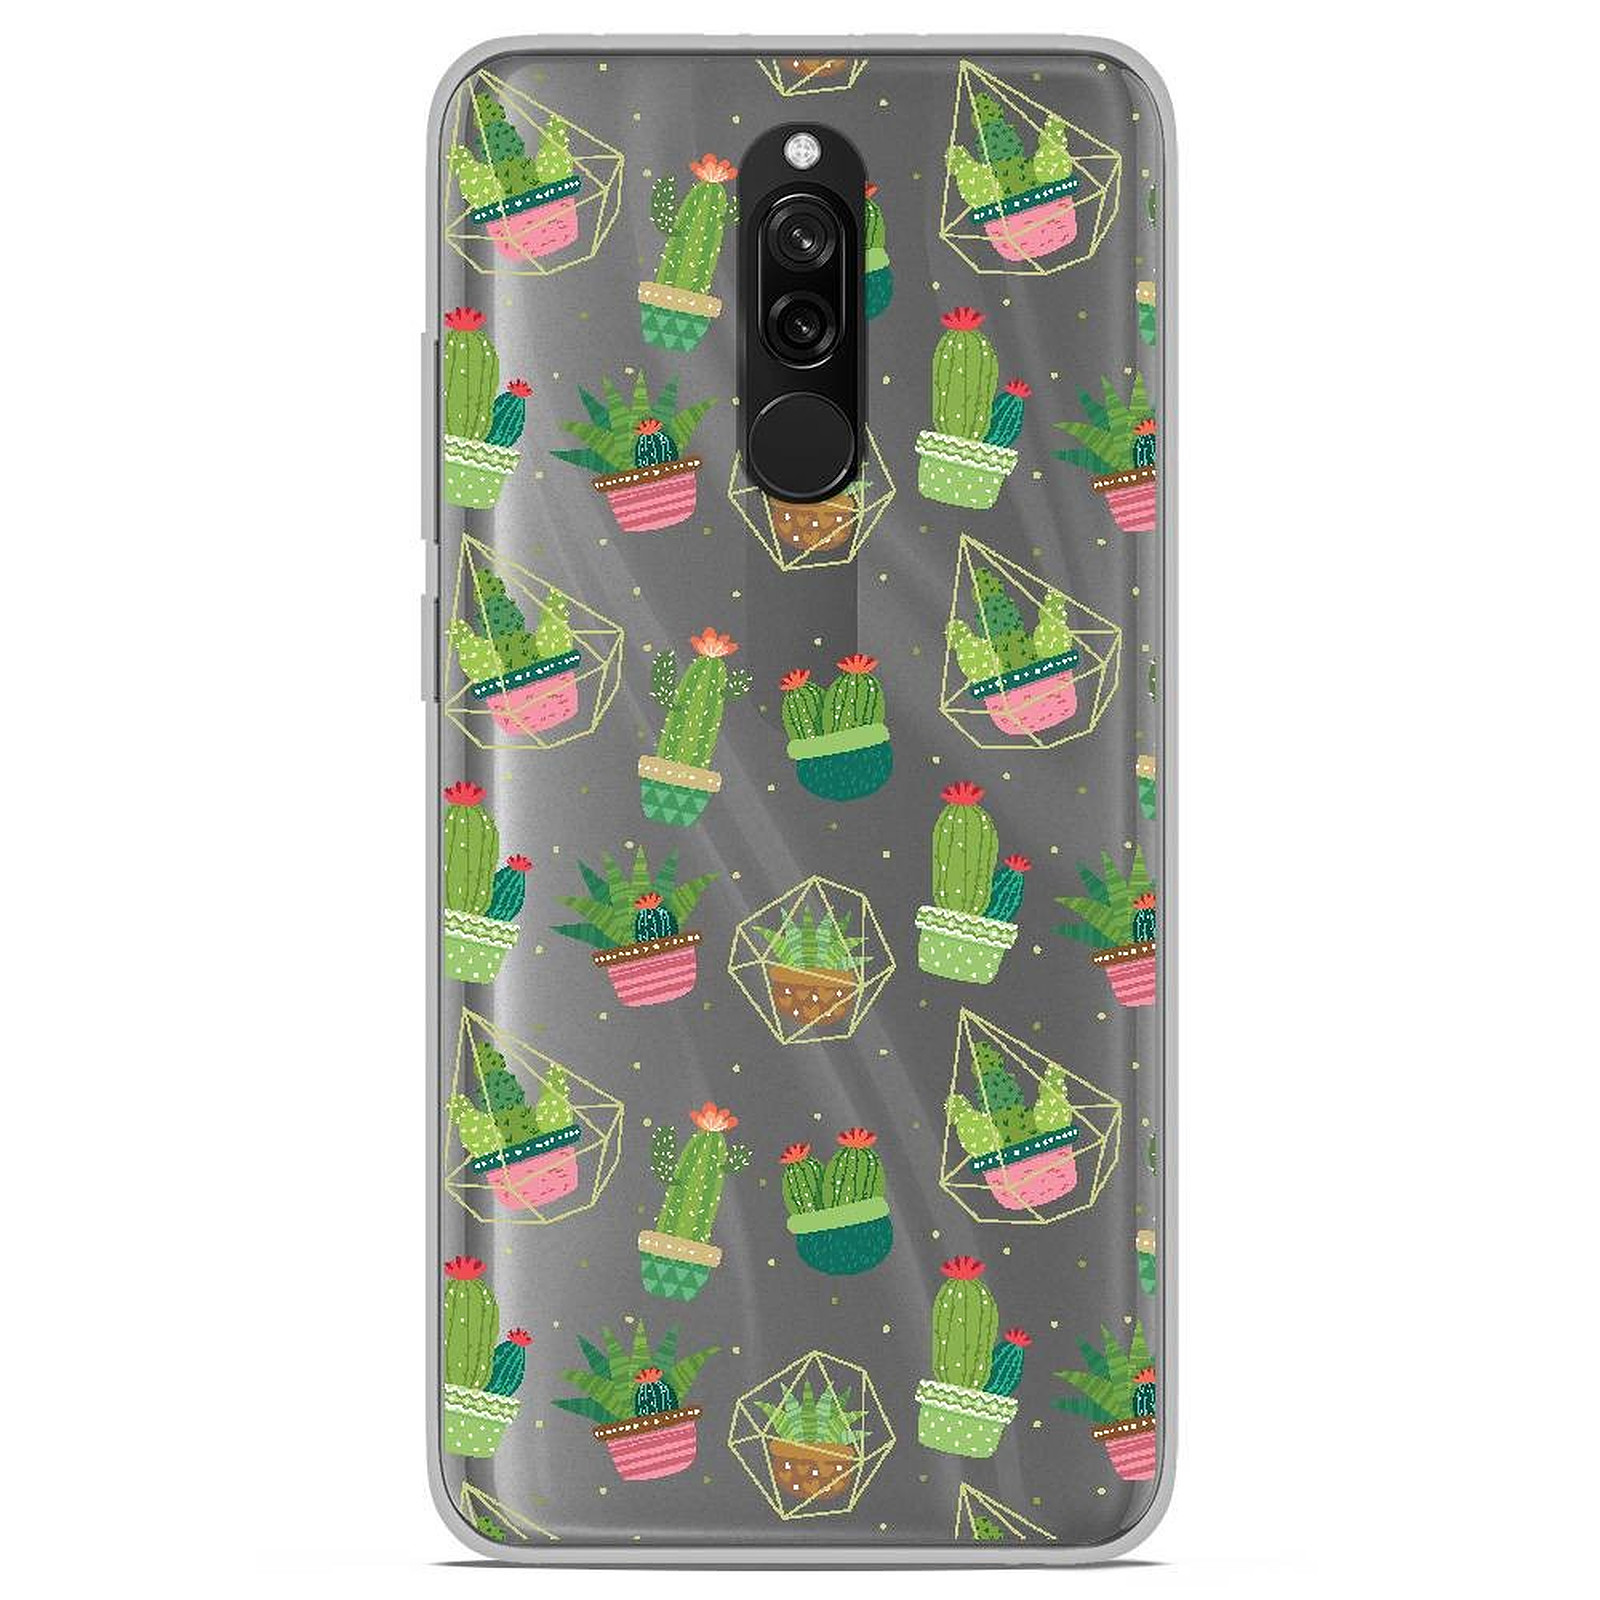 1001 Coques Coque silicone gel Xiaomi Redmi 7 motif Cactus - Coque telephone 1001Coques